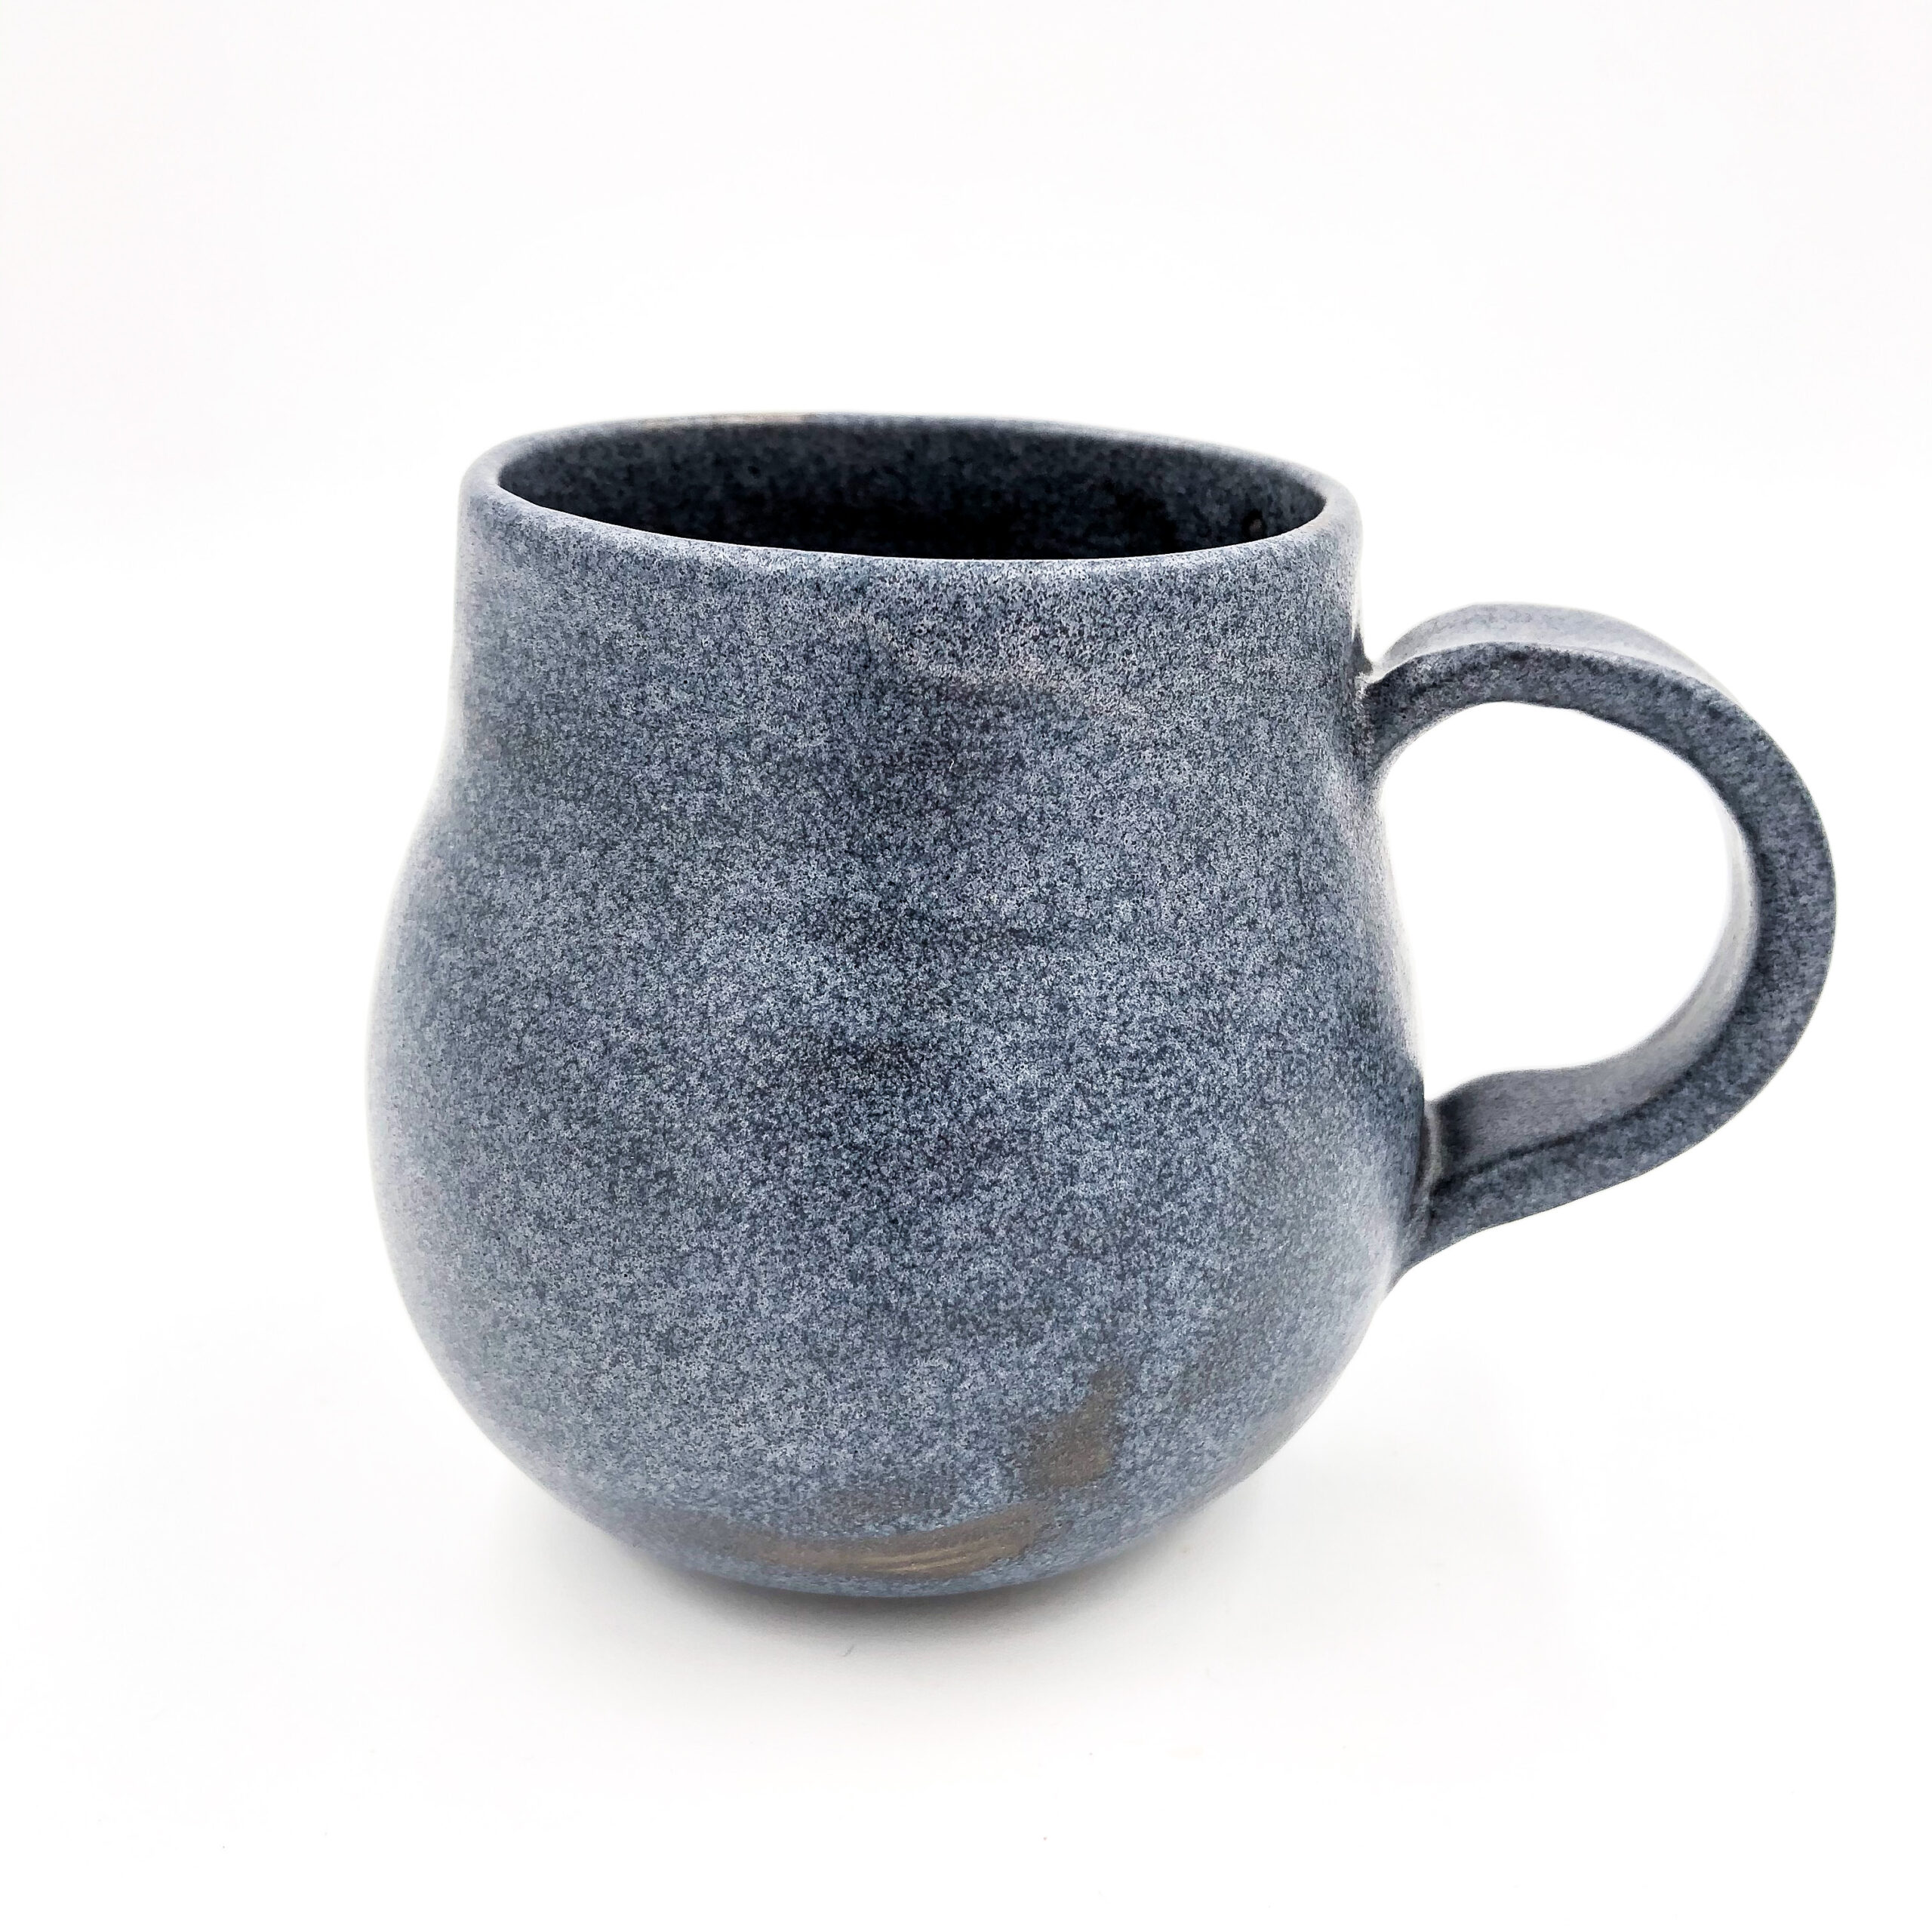 Round bottom mug